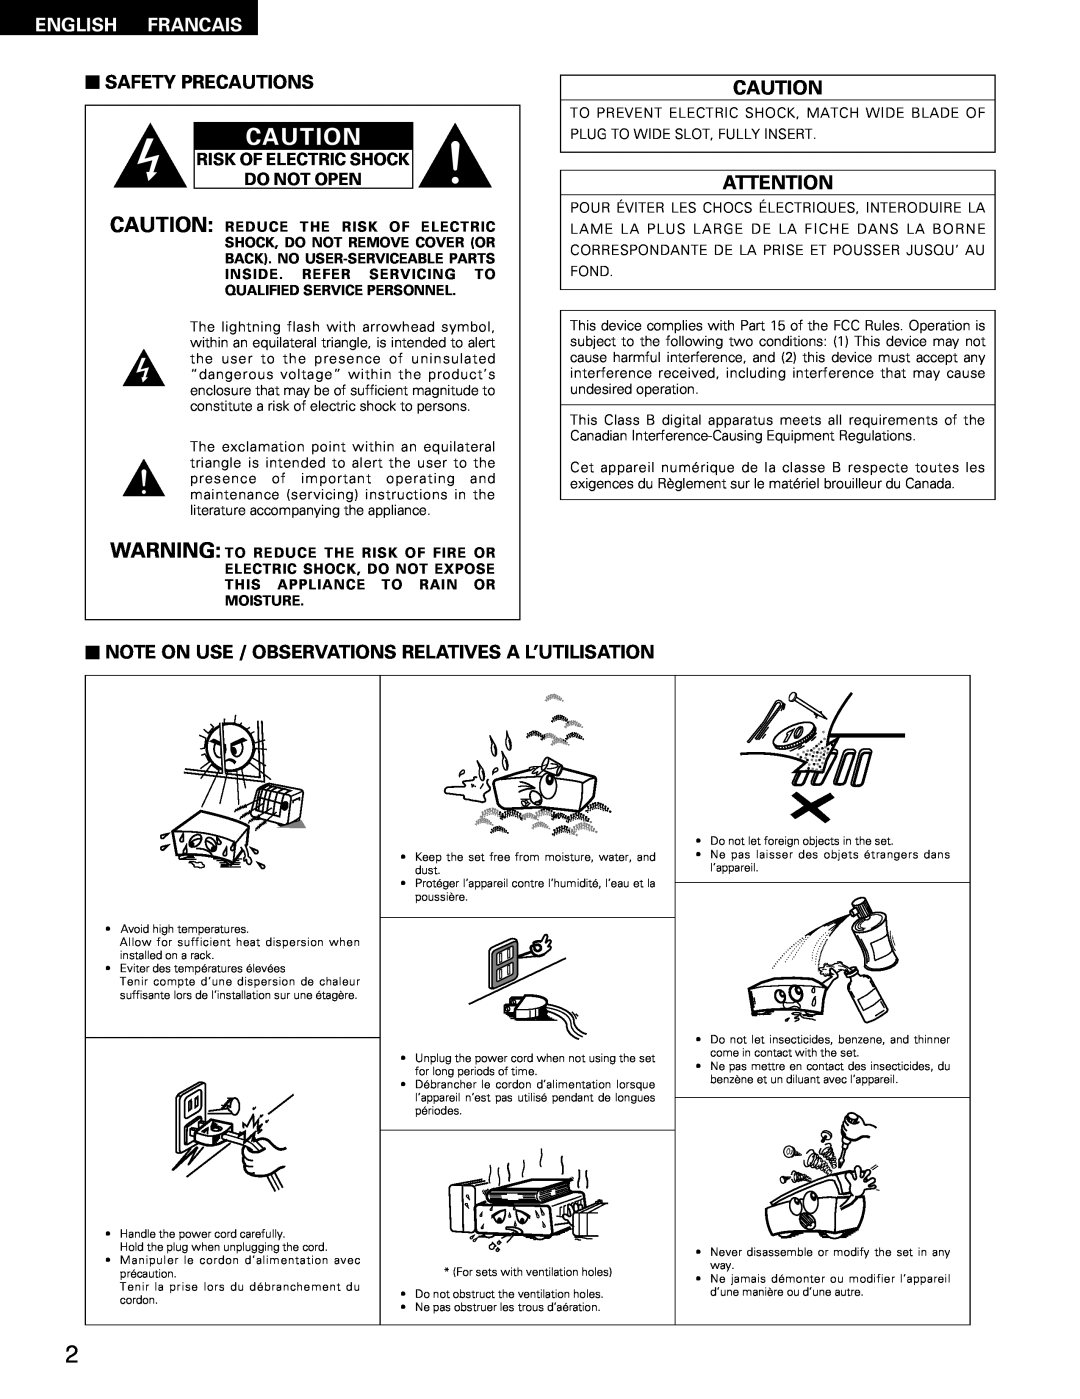 Denon DRA-295 manual English Francais, 2SAFETY PRECAUTIONS, Risk Of Electric Shock Do Not Open 